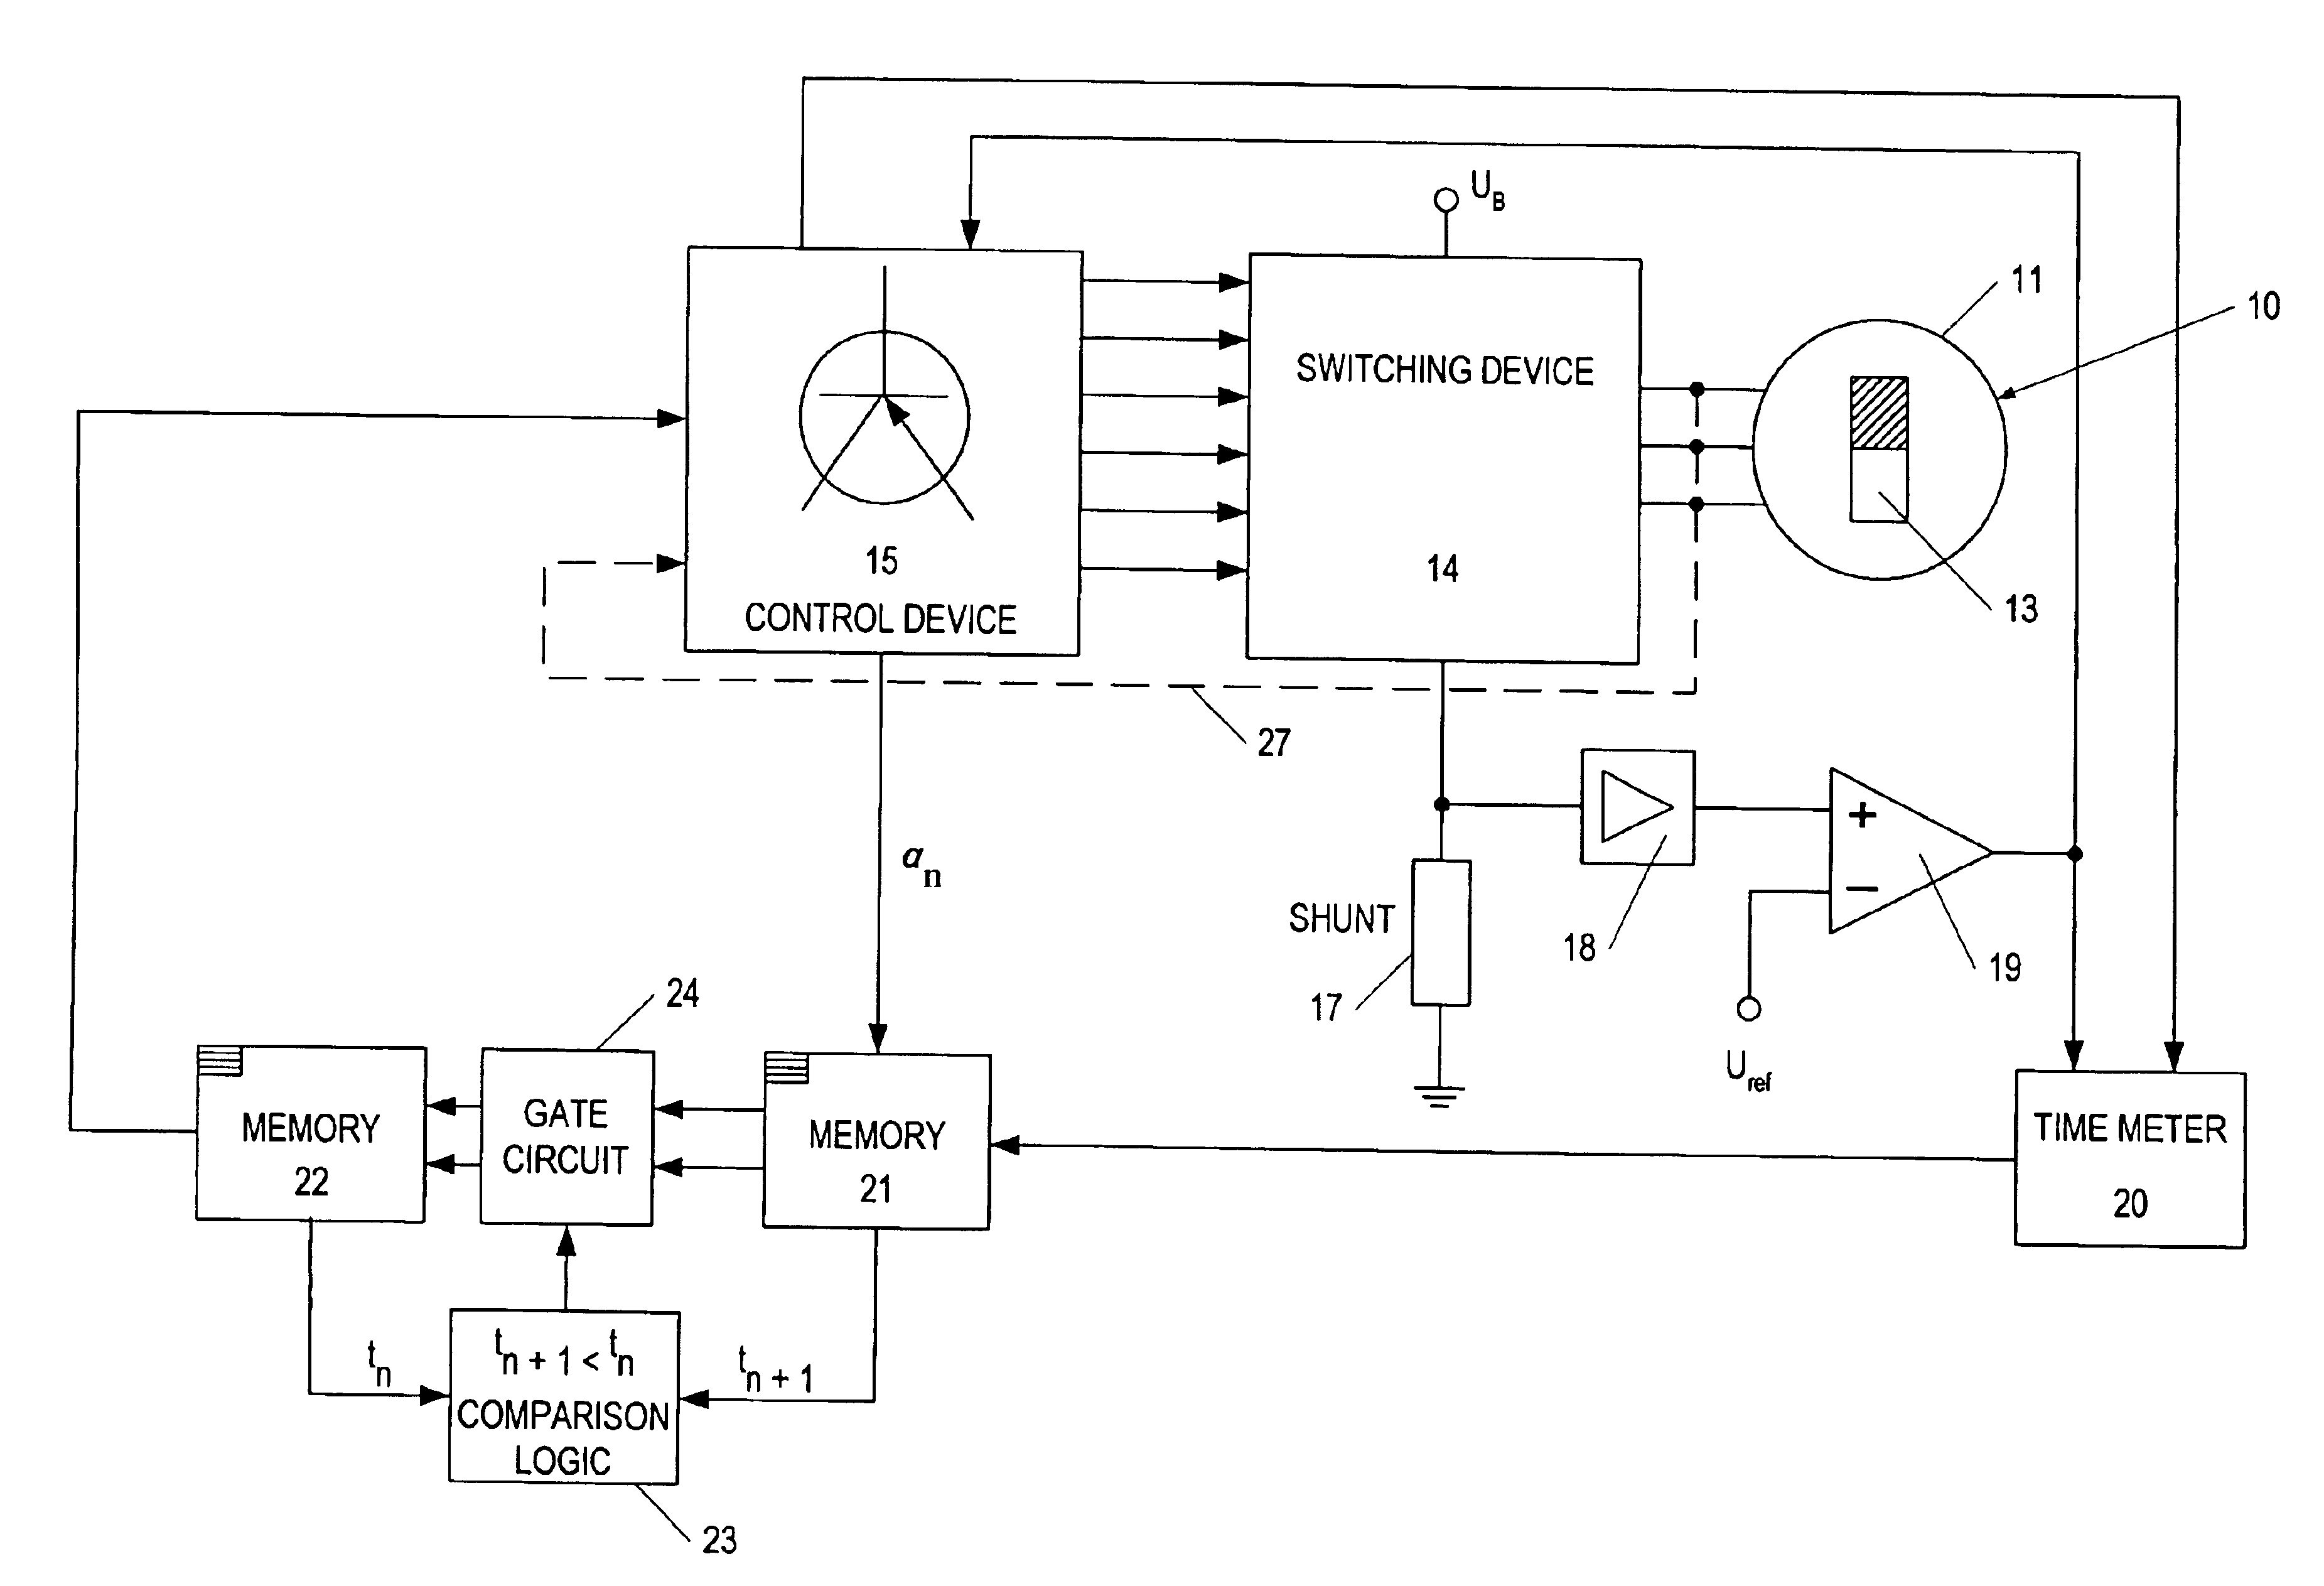 Method for starting a brushless d.c. motor